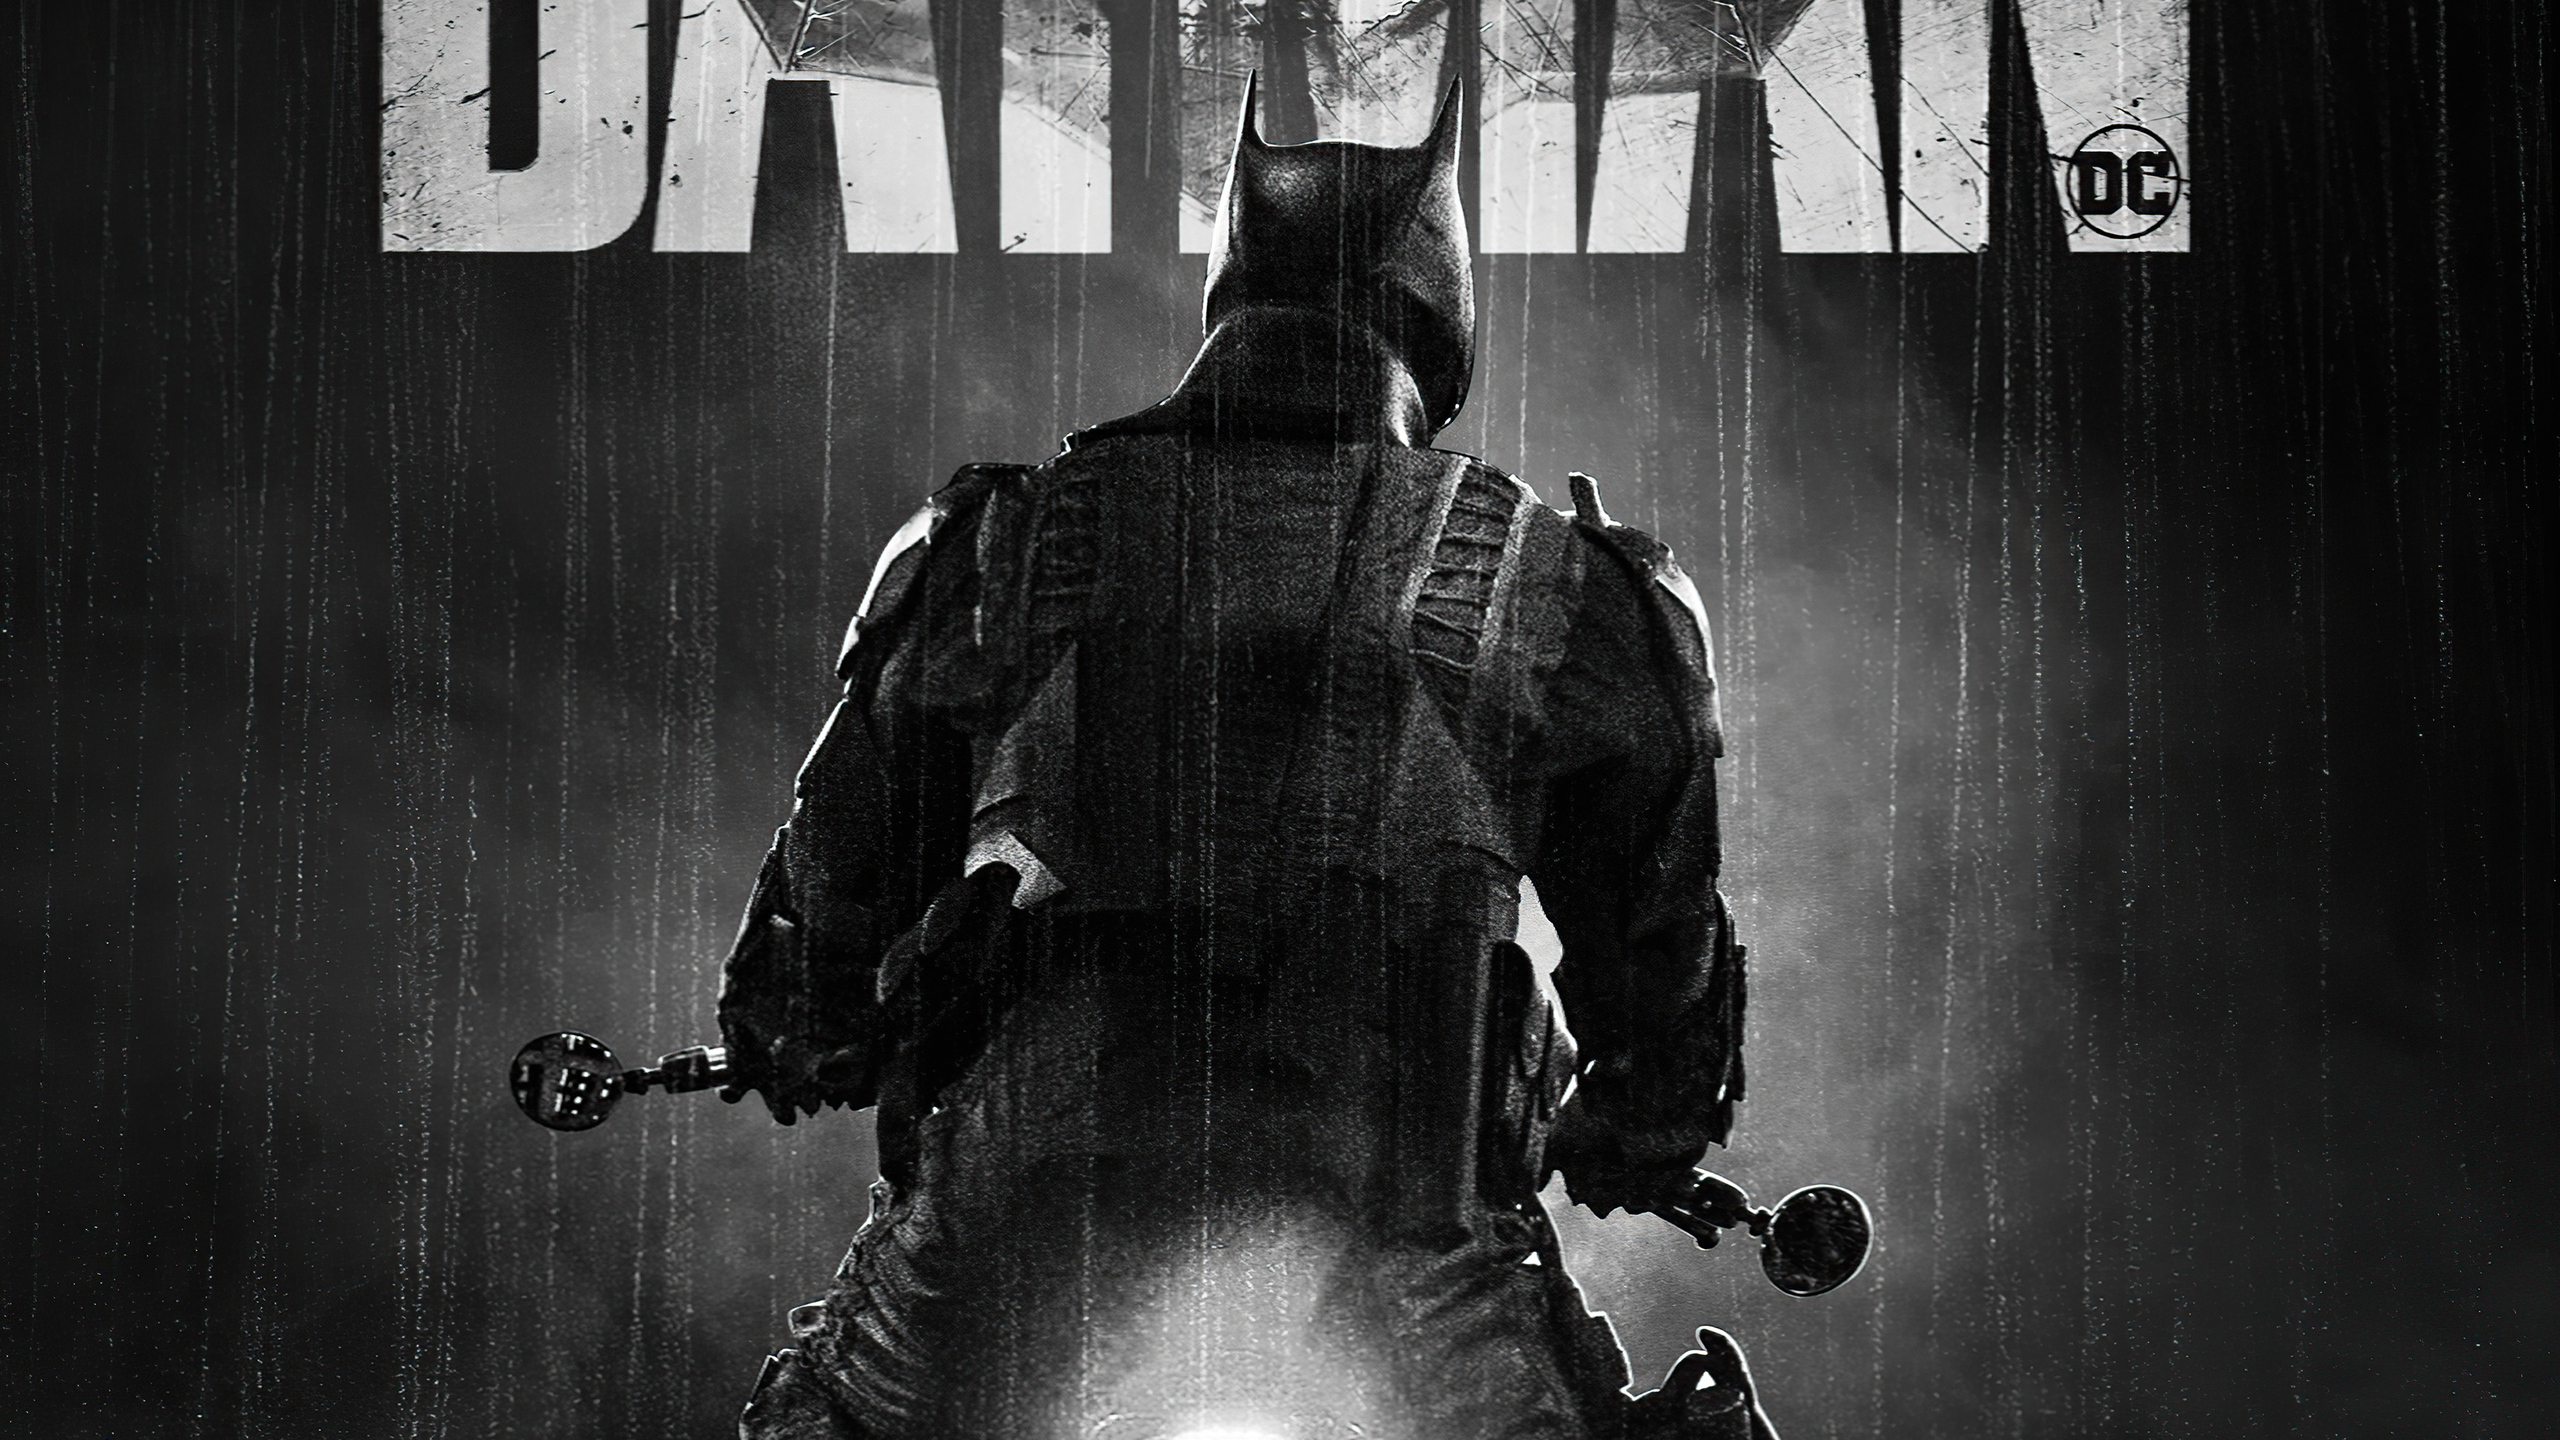 the-batman-dc-monochrome-poster-4k-vw.jpg